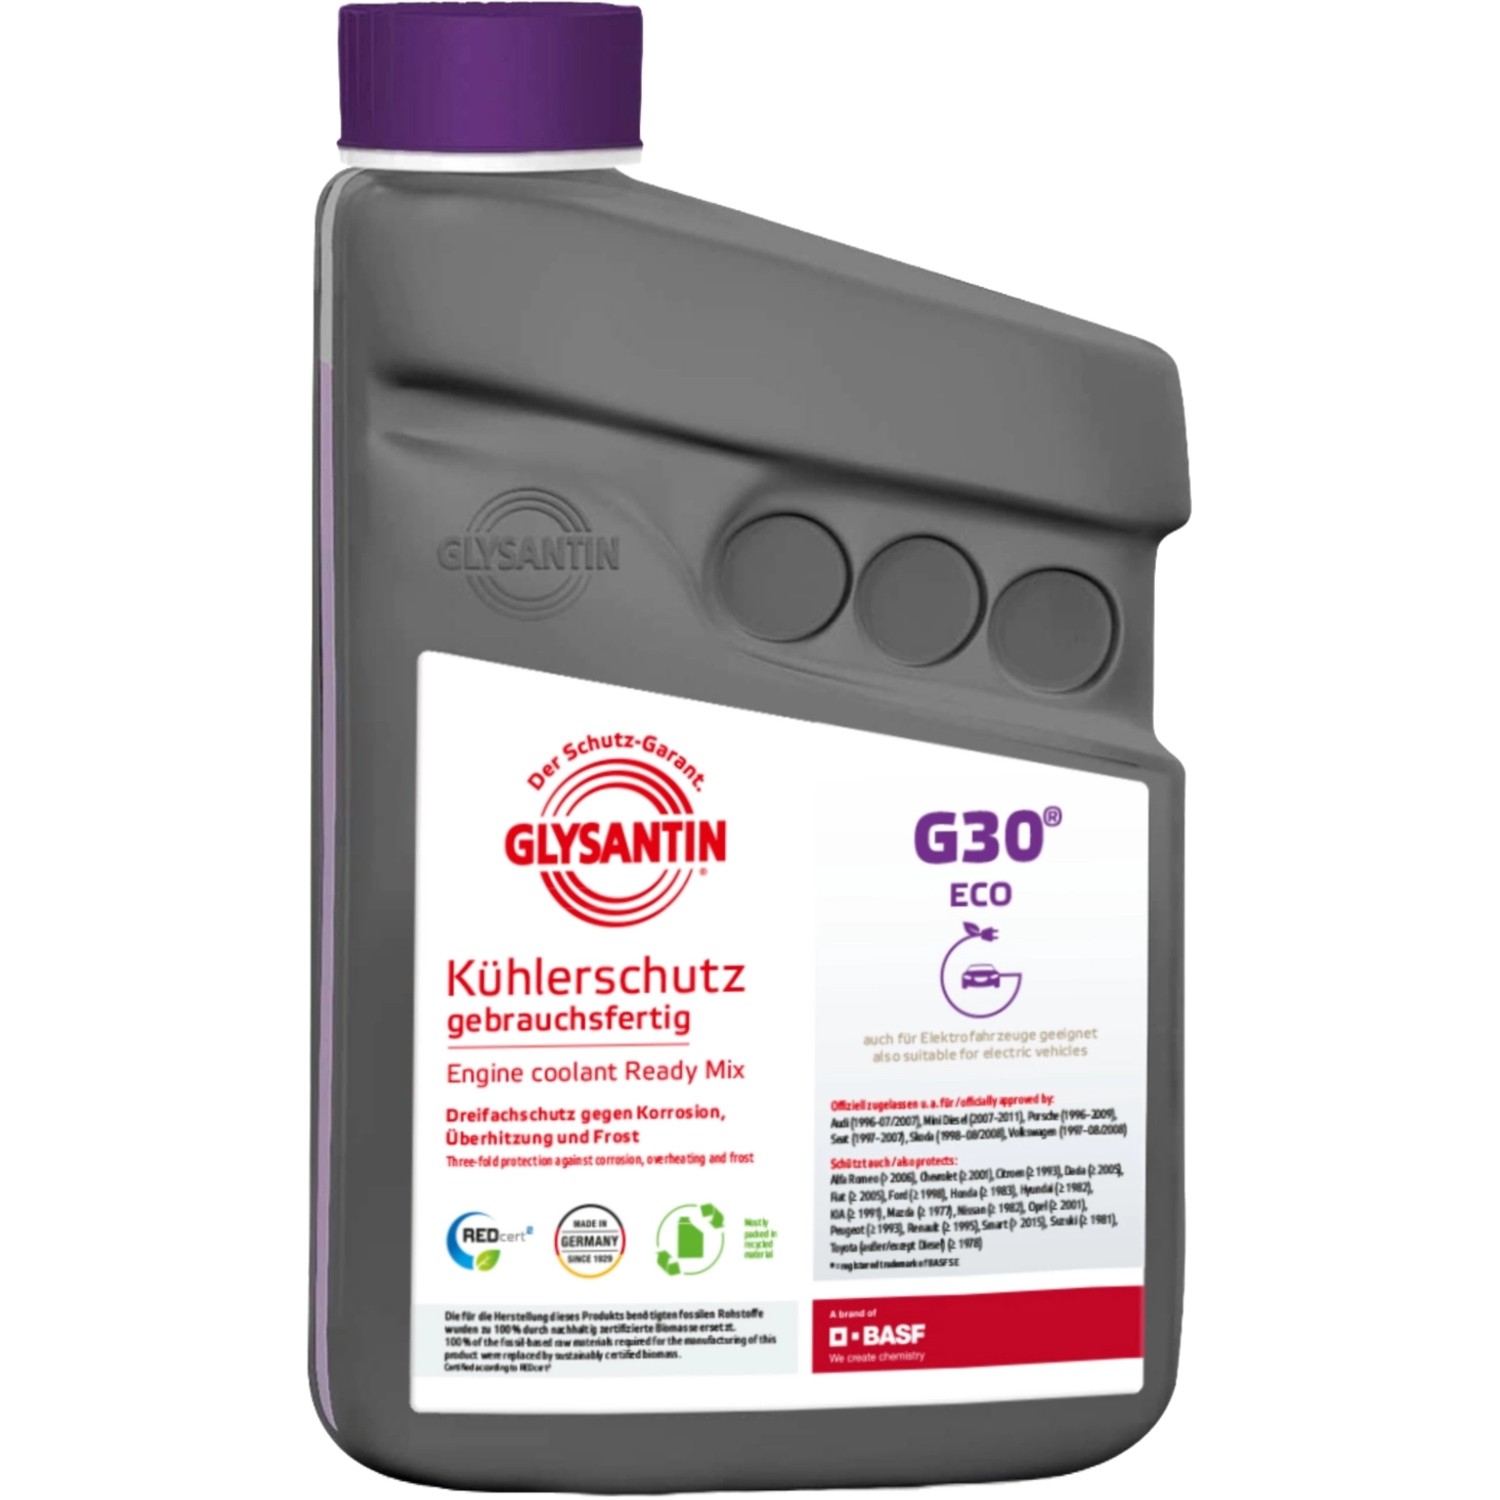 Glysantin Kühlerschutz Ready Mix G30 ECO BMB 100 1 Liter